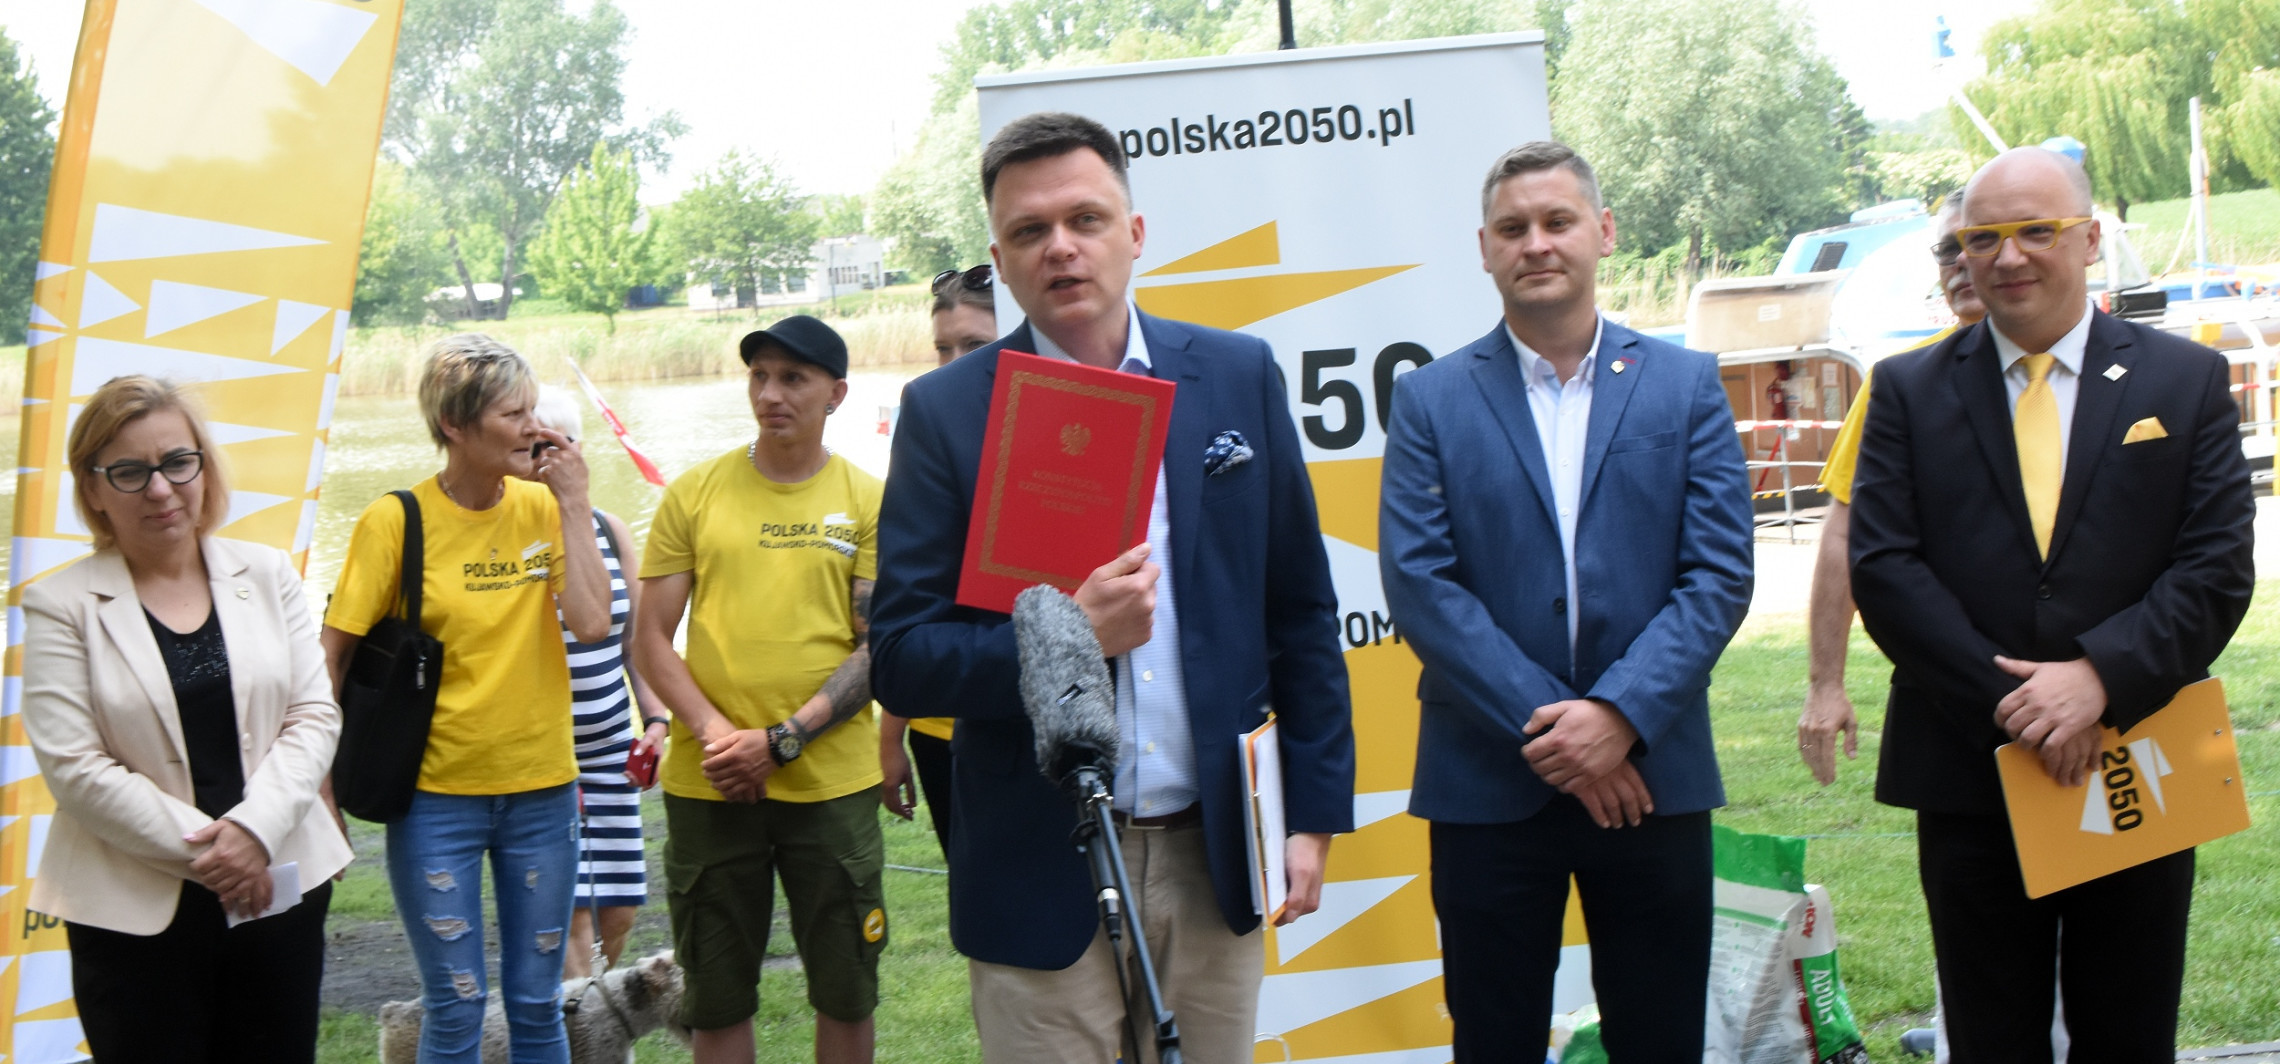 Kruszwica - Hołownia nad Gopłem: dzieci nam tego nie wybaczą